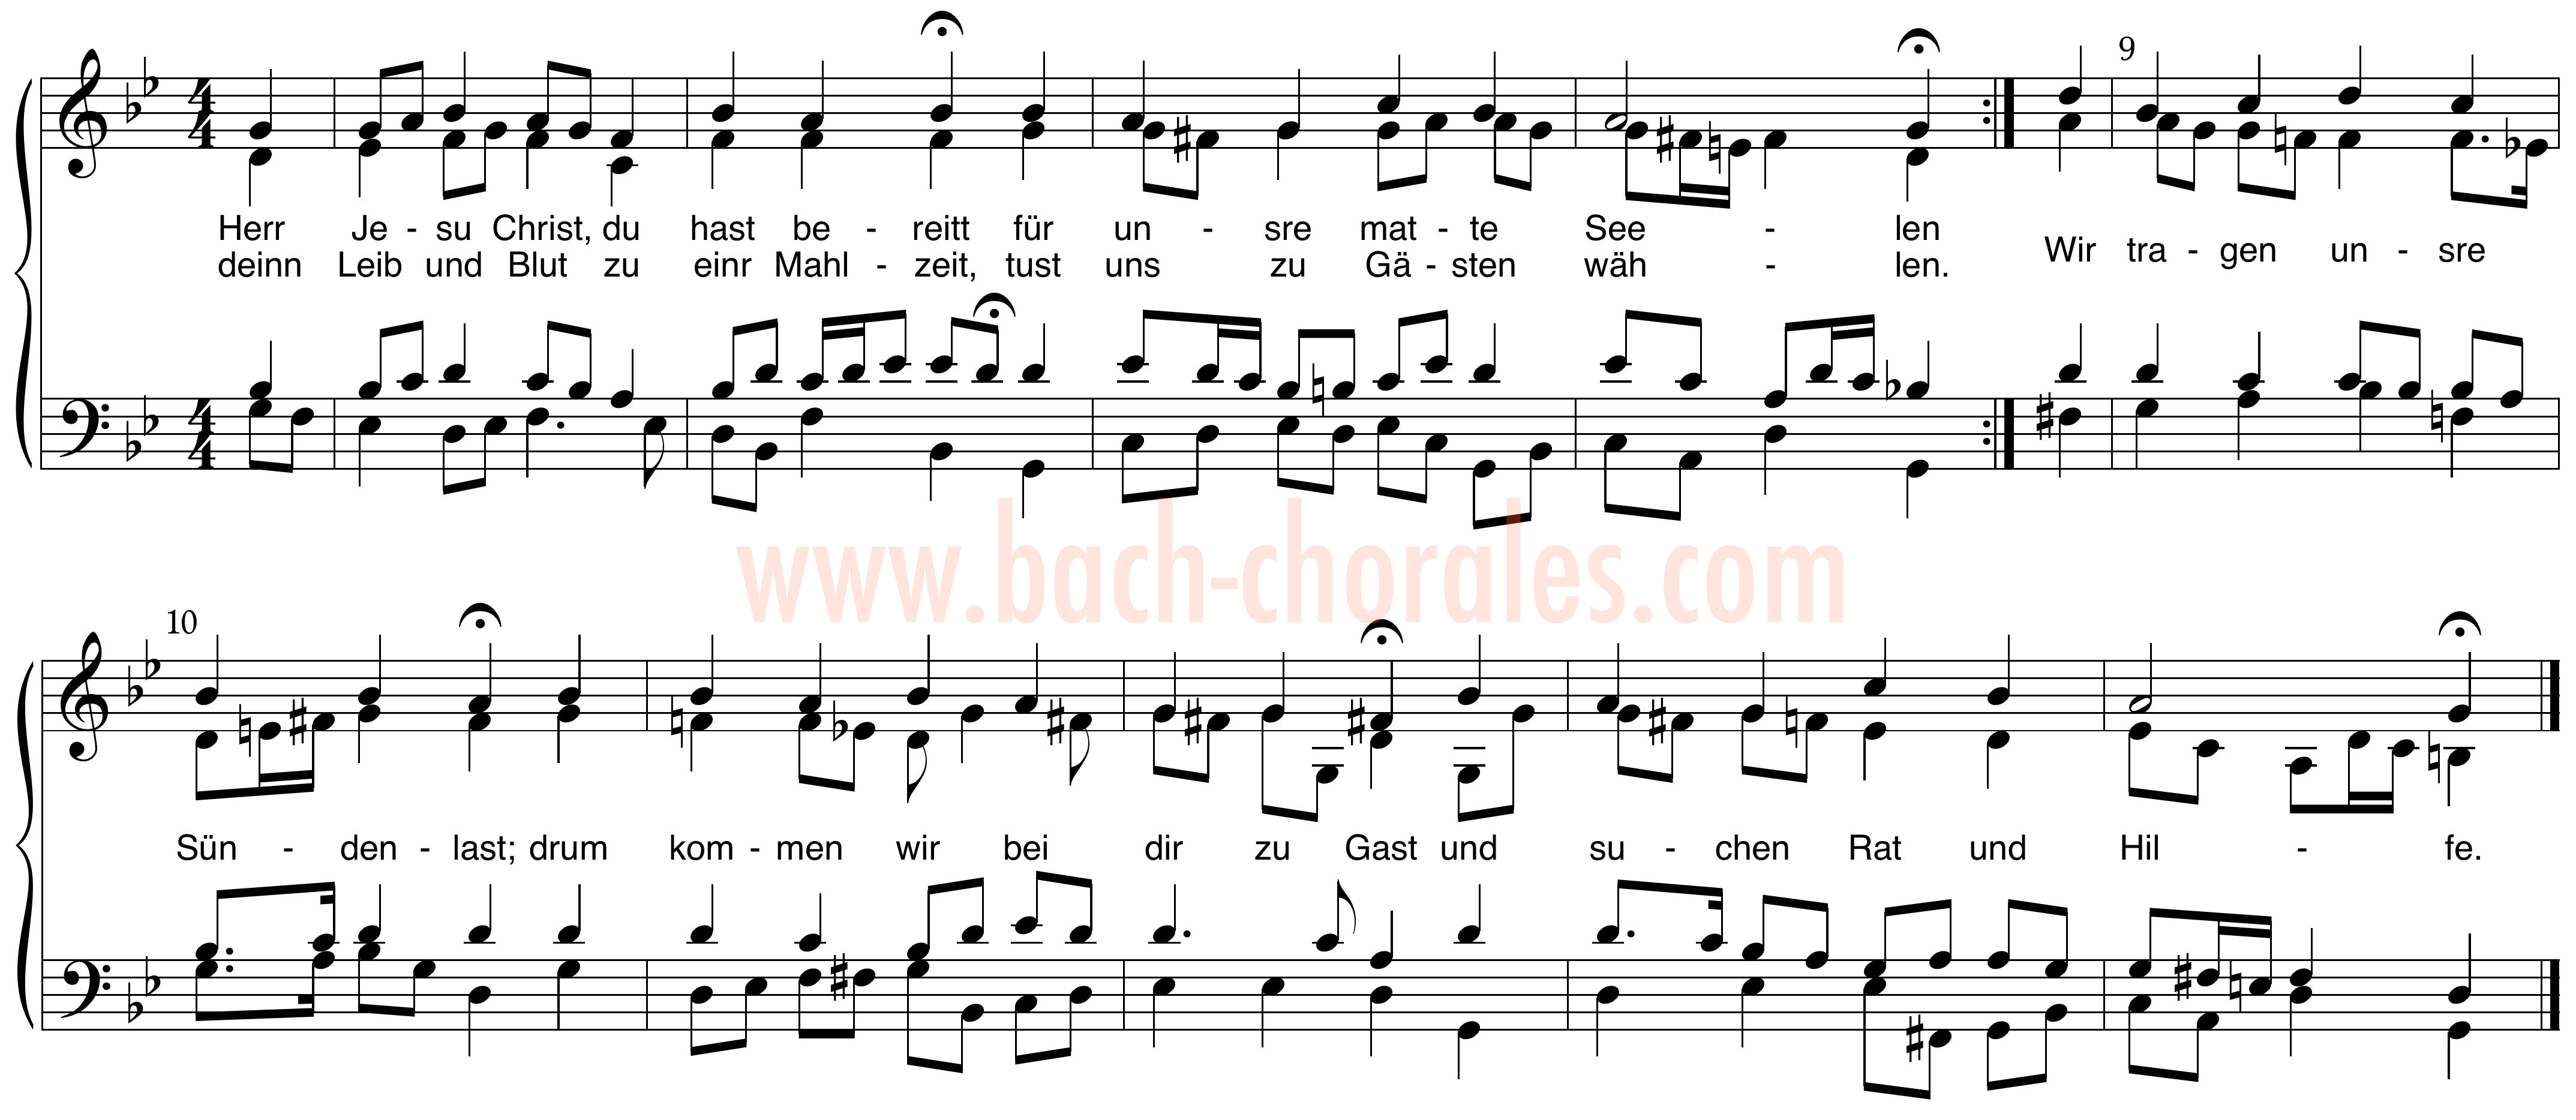 notenbeeld BWV 333 op https://www.bach-chorales.com/